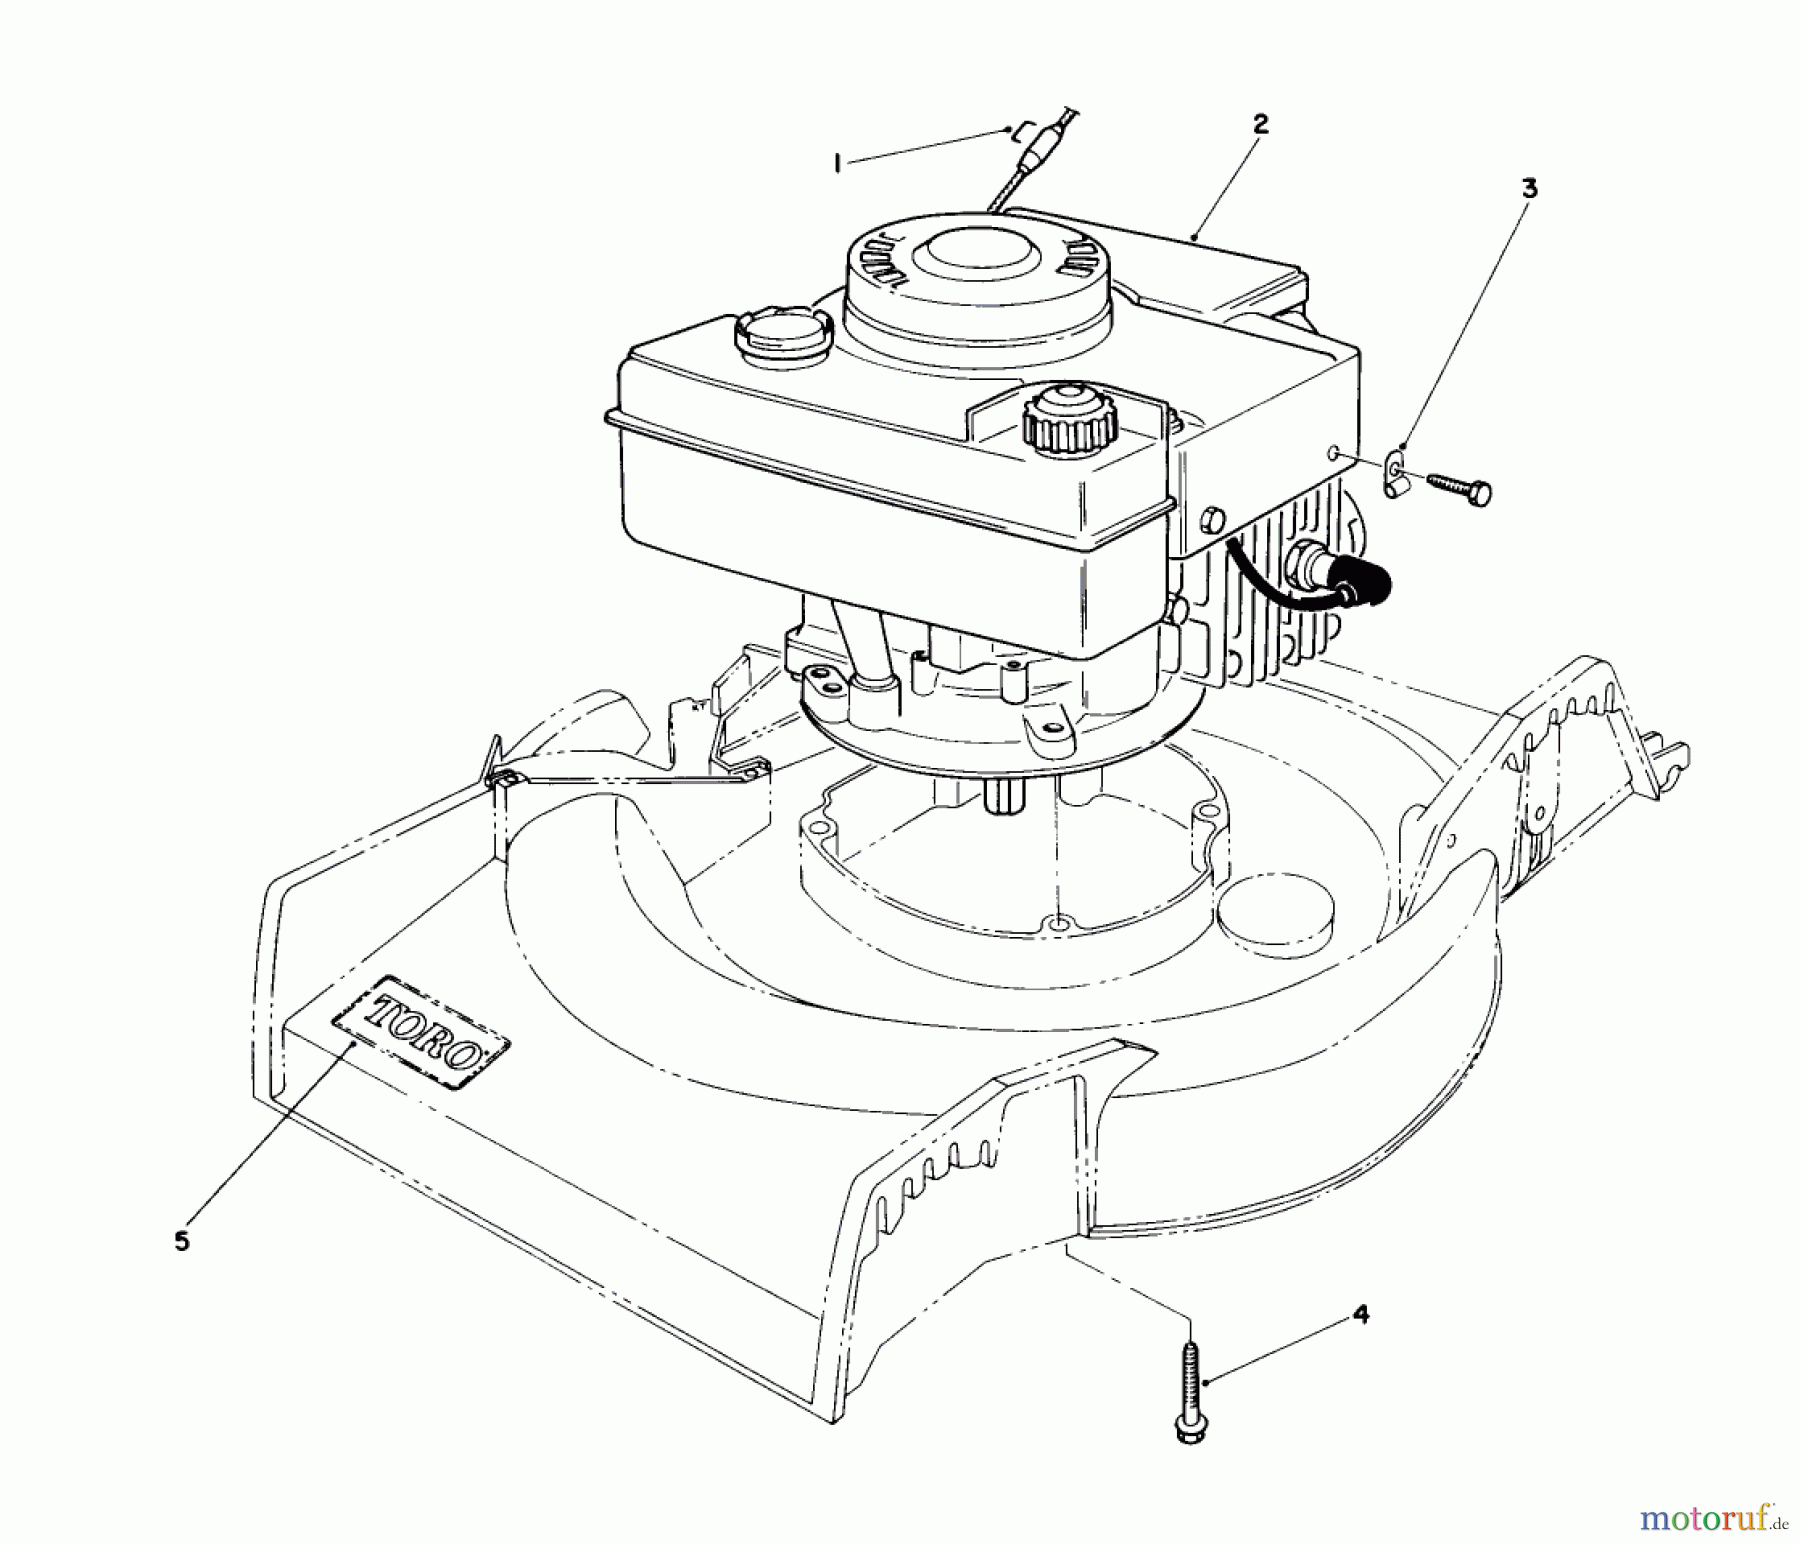  Toro Neu Mowers, Walk-Behind Seite 1 16575 - Toro Lawnmower, 1990 (0000001-0999999) ENGINE ASSEMBLY